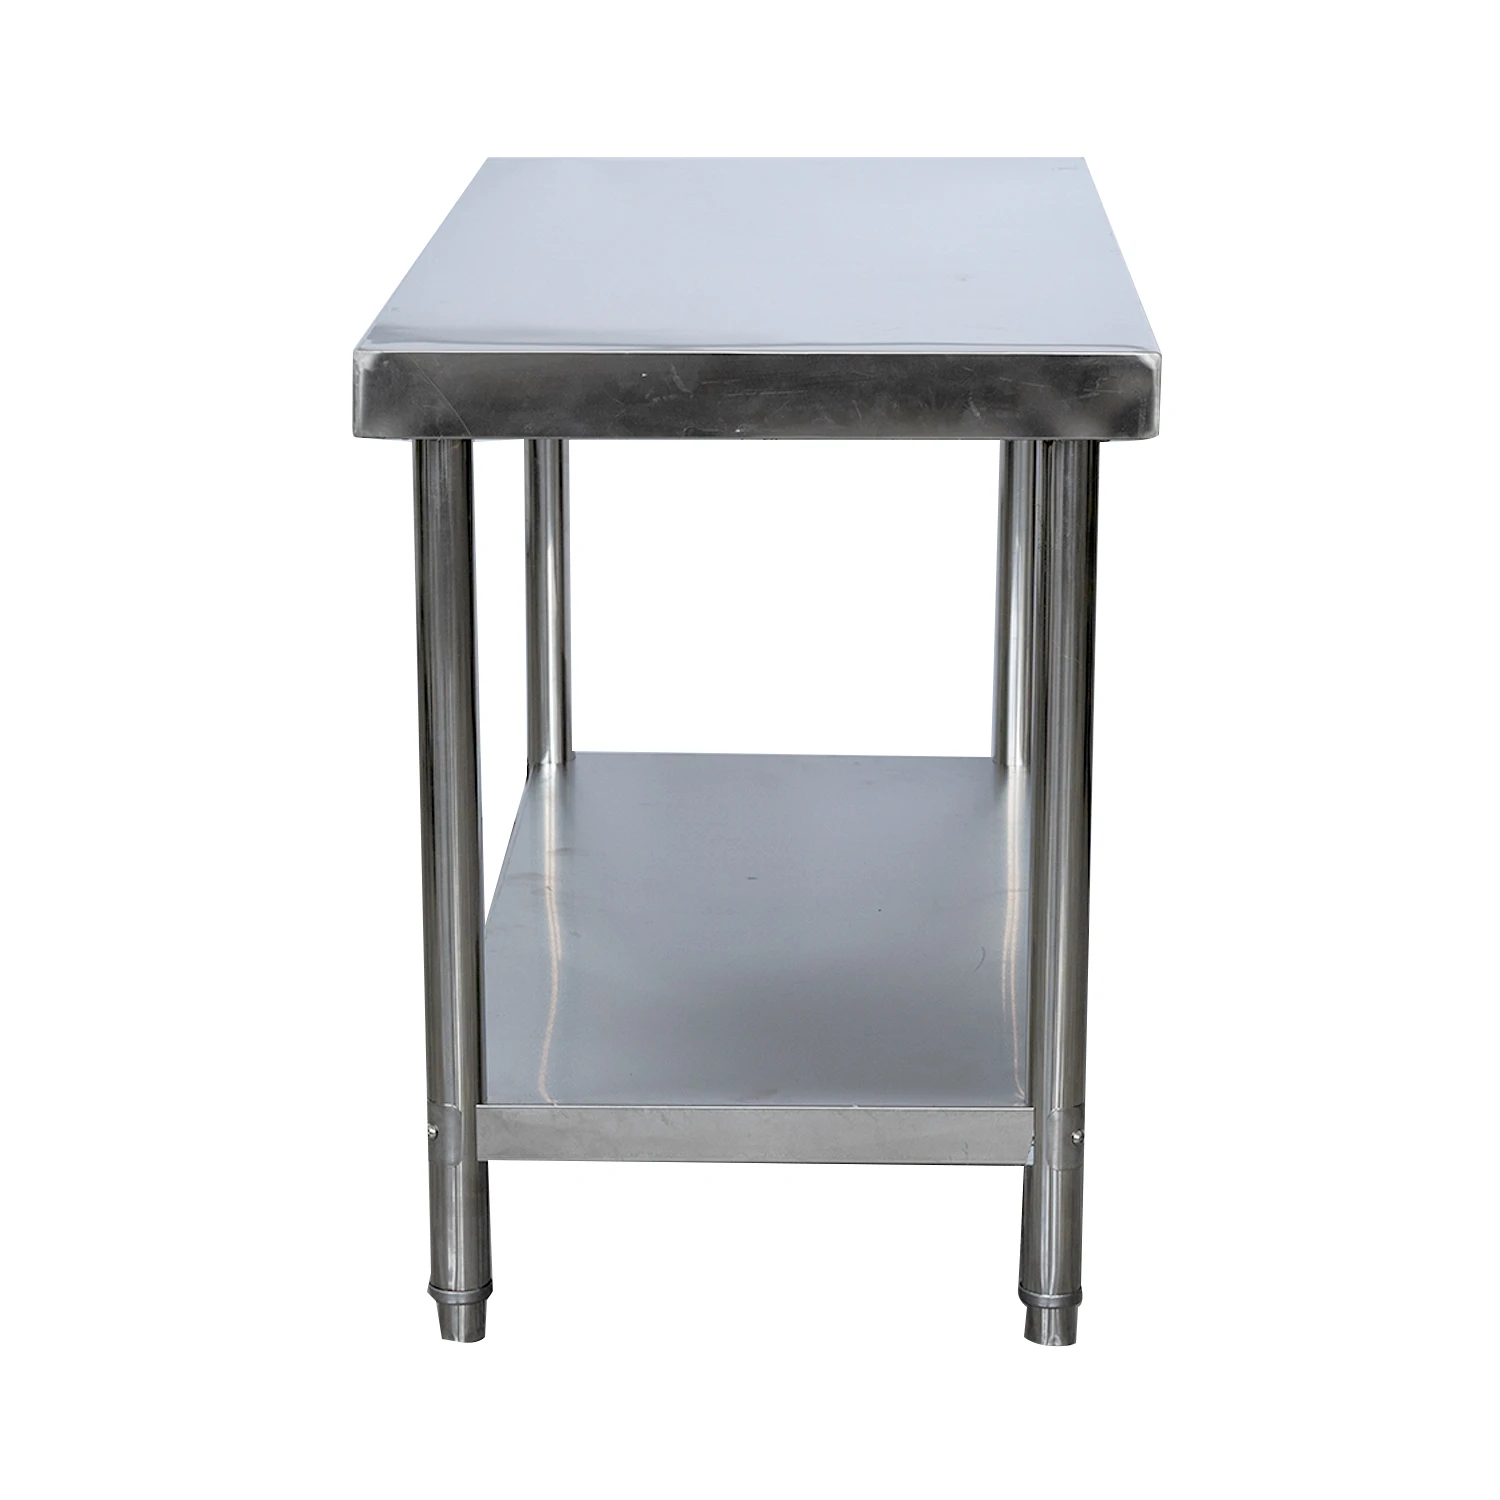 Kitchen Equipment Work Bench /Restaurant Stainless Steel Table kitchen